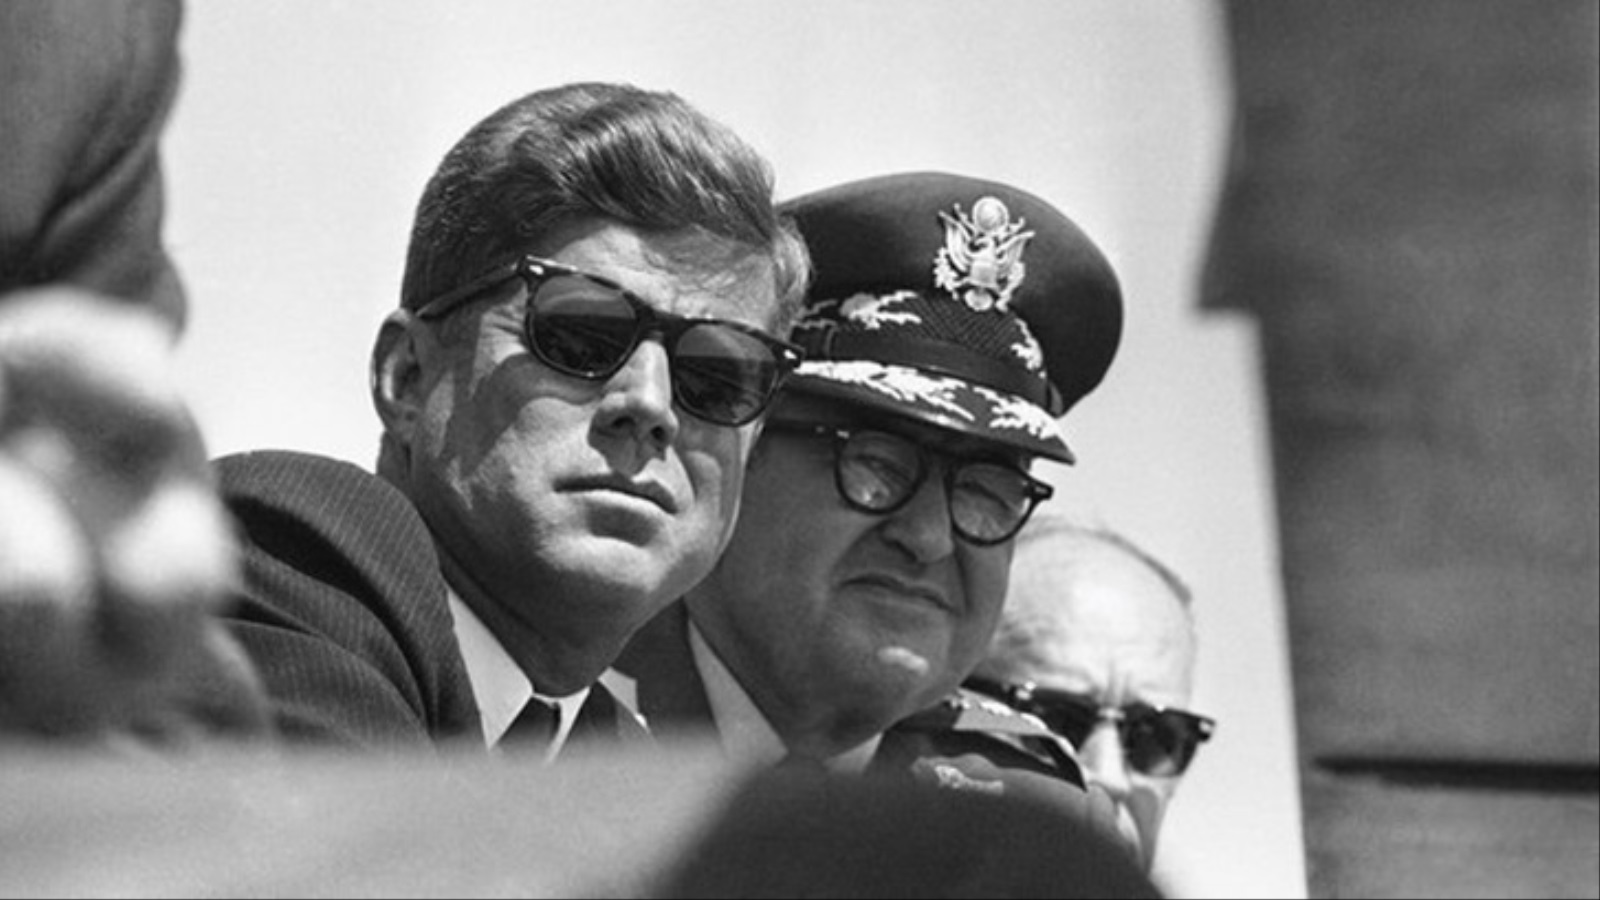 جون كينيدي، الرئيس الخامس والثلاثون للولايات المتحدة، اغتيل في الثاني والعشرين من نوفمبر لعام 1963 (مواقع التواصل)